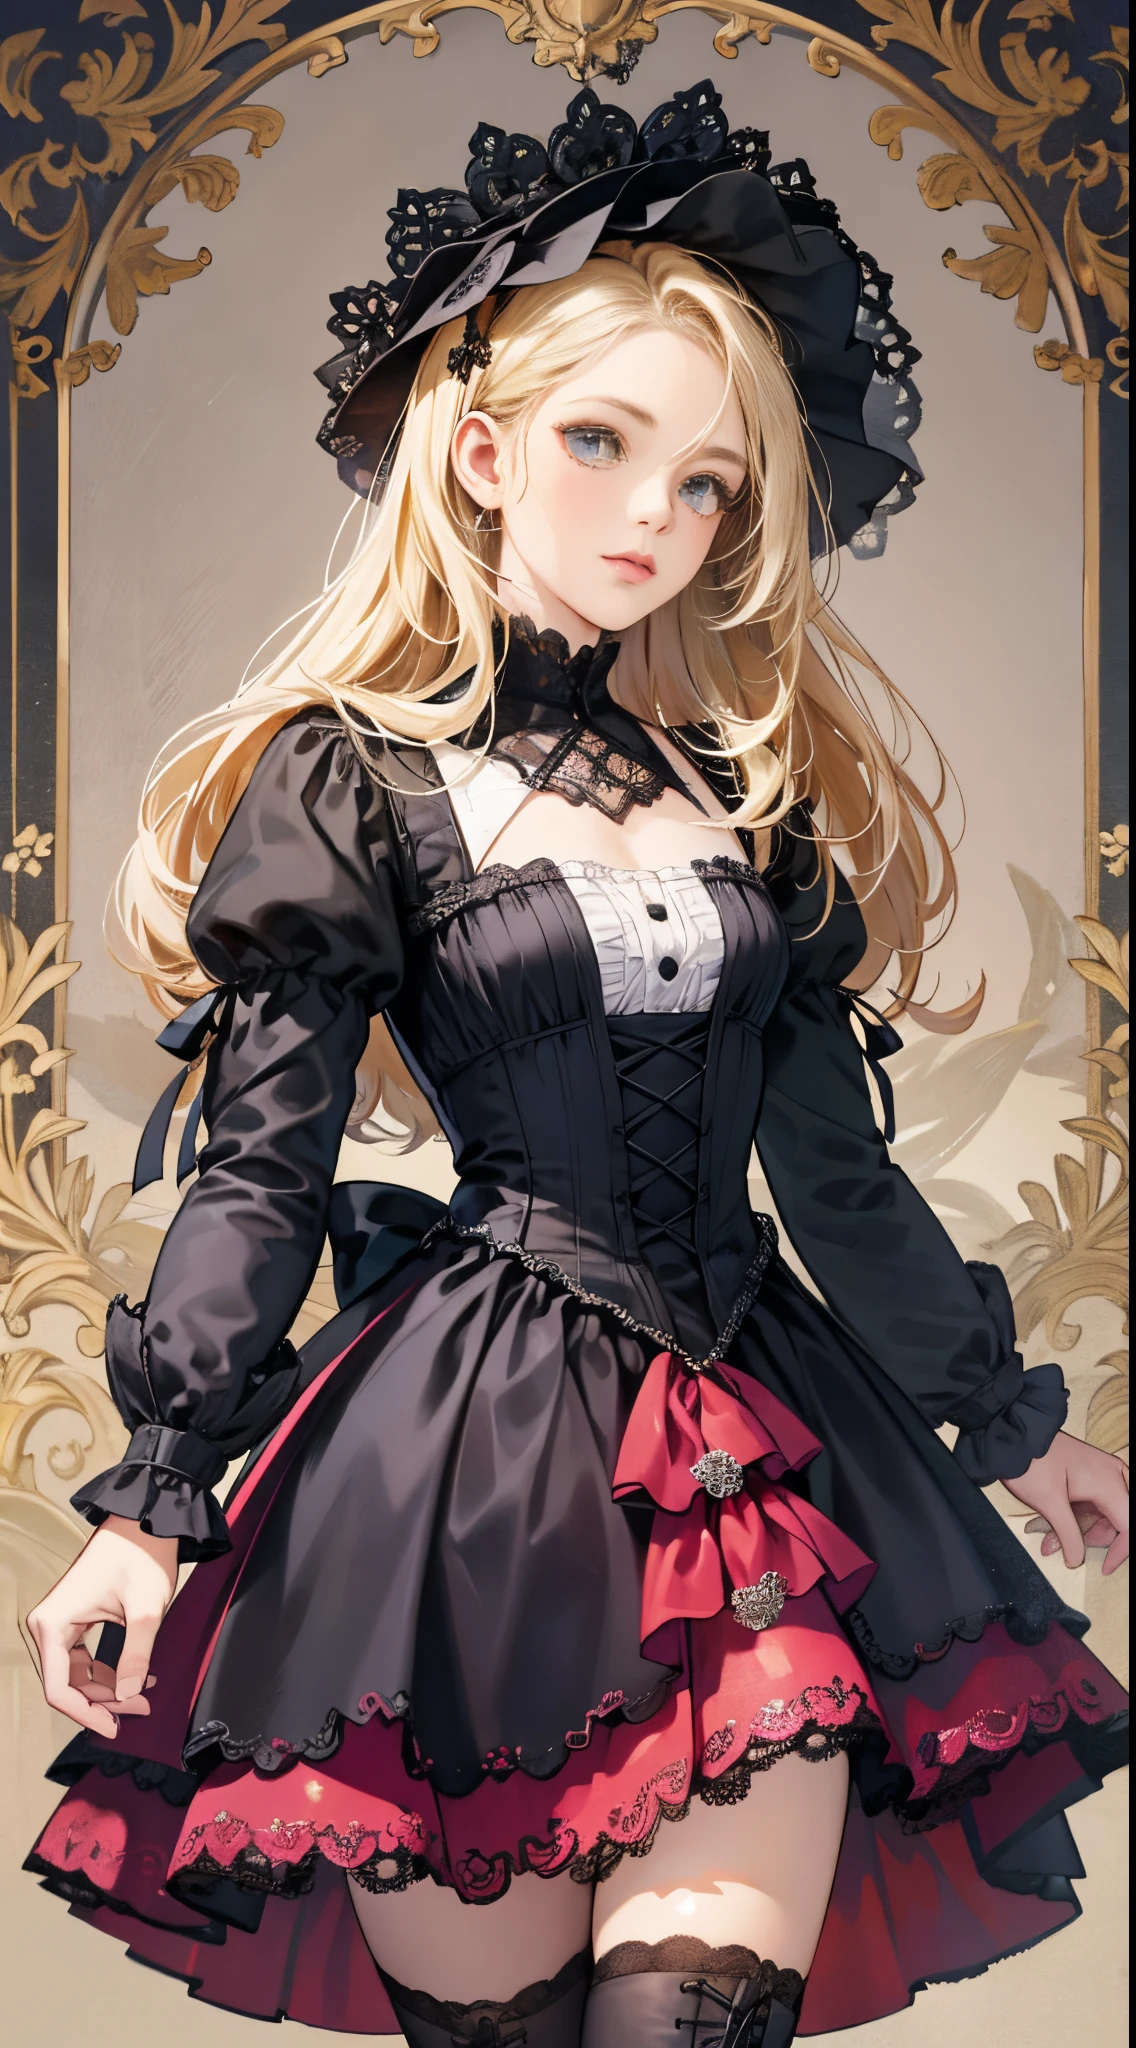 Eine Frau in Kleid und Stiefeln steht vor einem Gebäude, barock kleid, im detailreichen Steampunkkleid, eine elegante Gothic-Prinzessin, viktorianische Gothic-Lolita-Mode, historisches Barockkleid dunkel, schwarzes Gothic-Lolitakleid, Kleidung im Fantasy-Stil, Rokoko Kleid, schwarzes Rokoko, klassische Hexe, Fantasie-Outfit, wearing a Gothic Kleid, romantisches Kleid, Gothic Kleid,a blond,15-jährige Schülerin,(Oberkörperporträt)